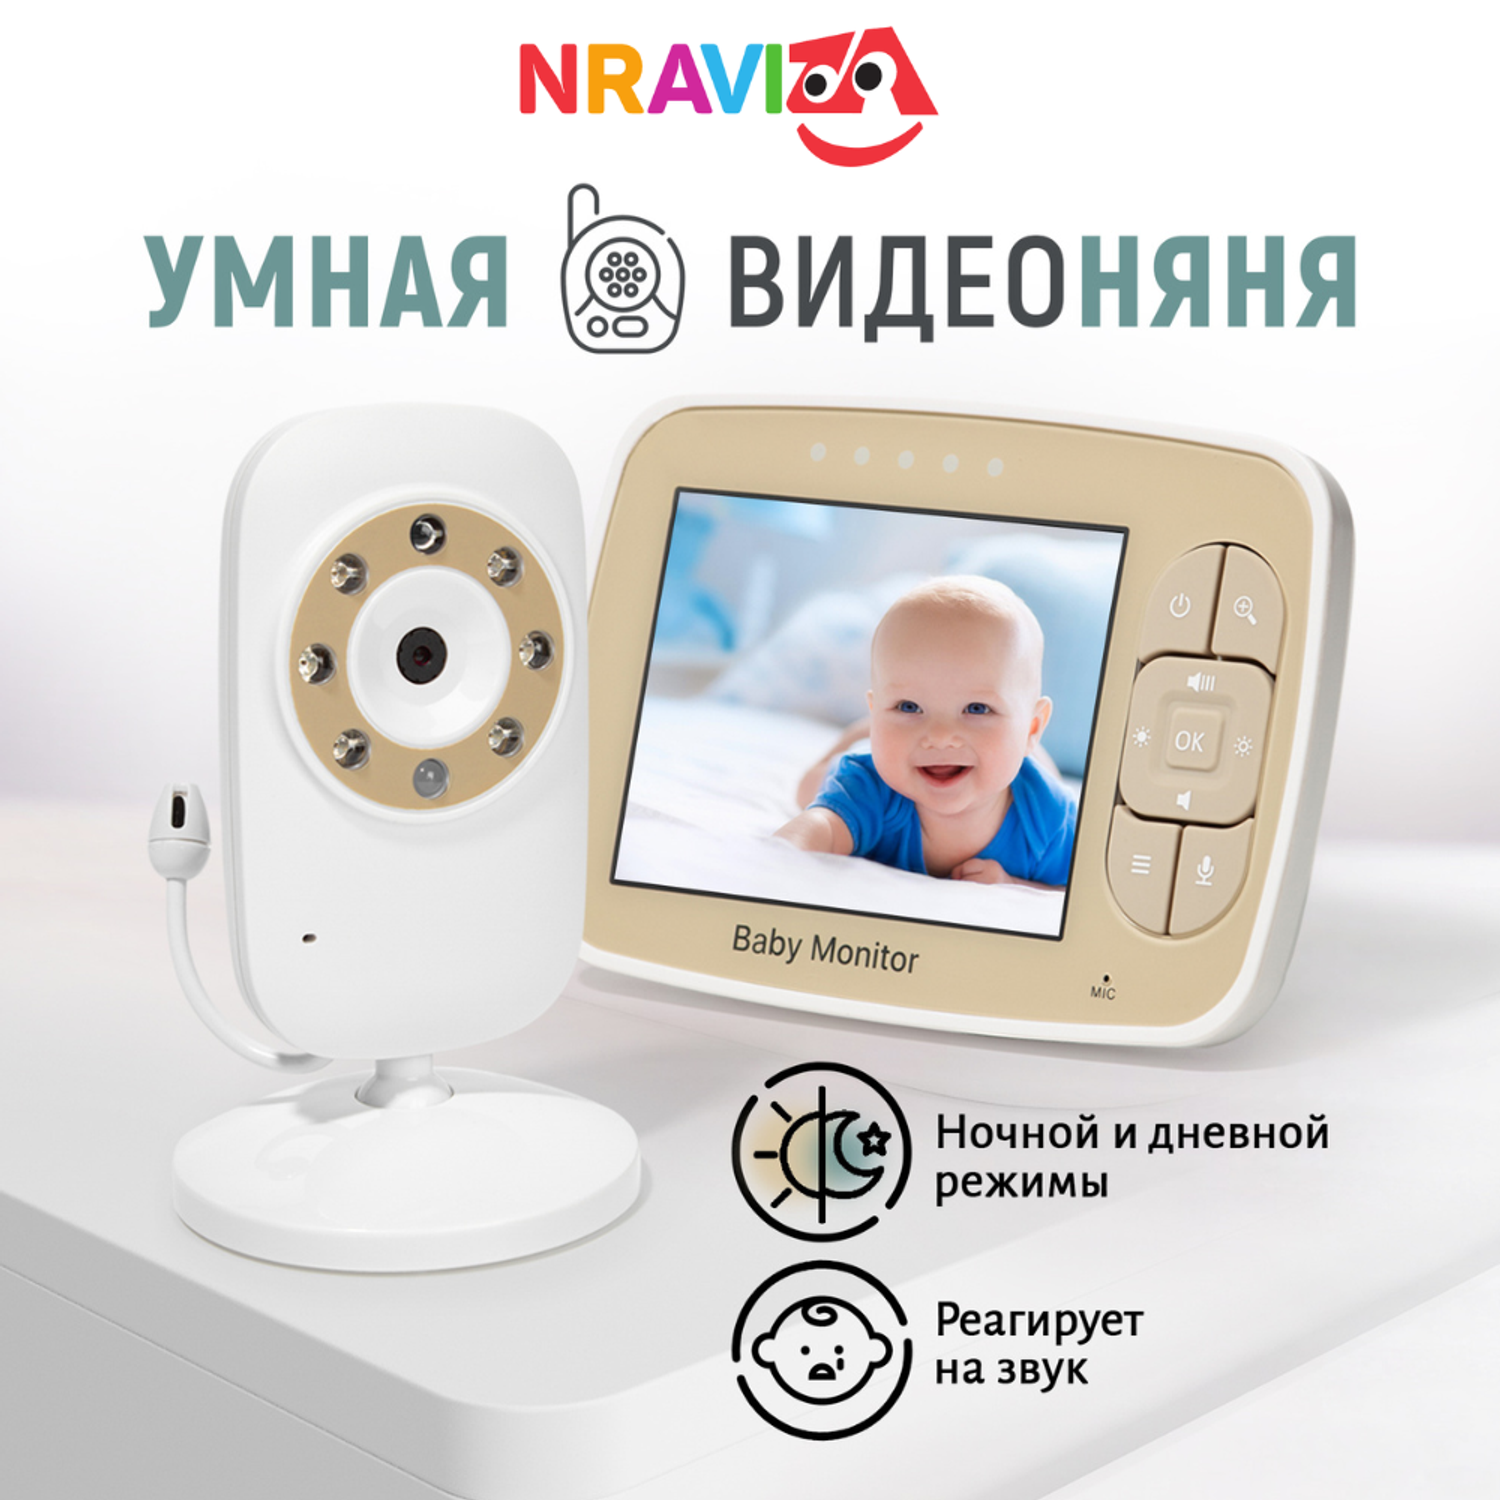 Видеоняня беспроводная NRAVIZA Детям с экраном 3.5 дюйма - фото 1